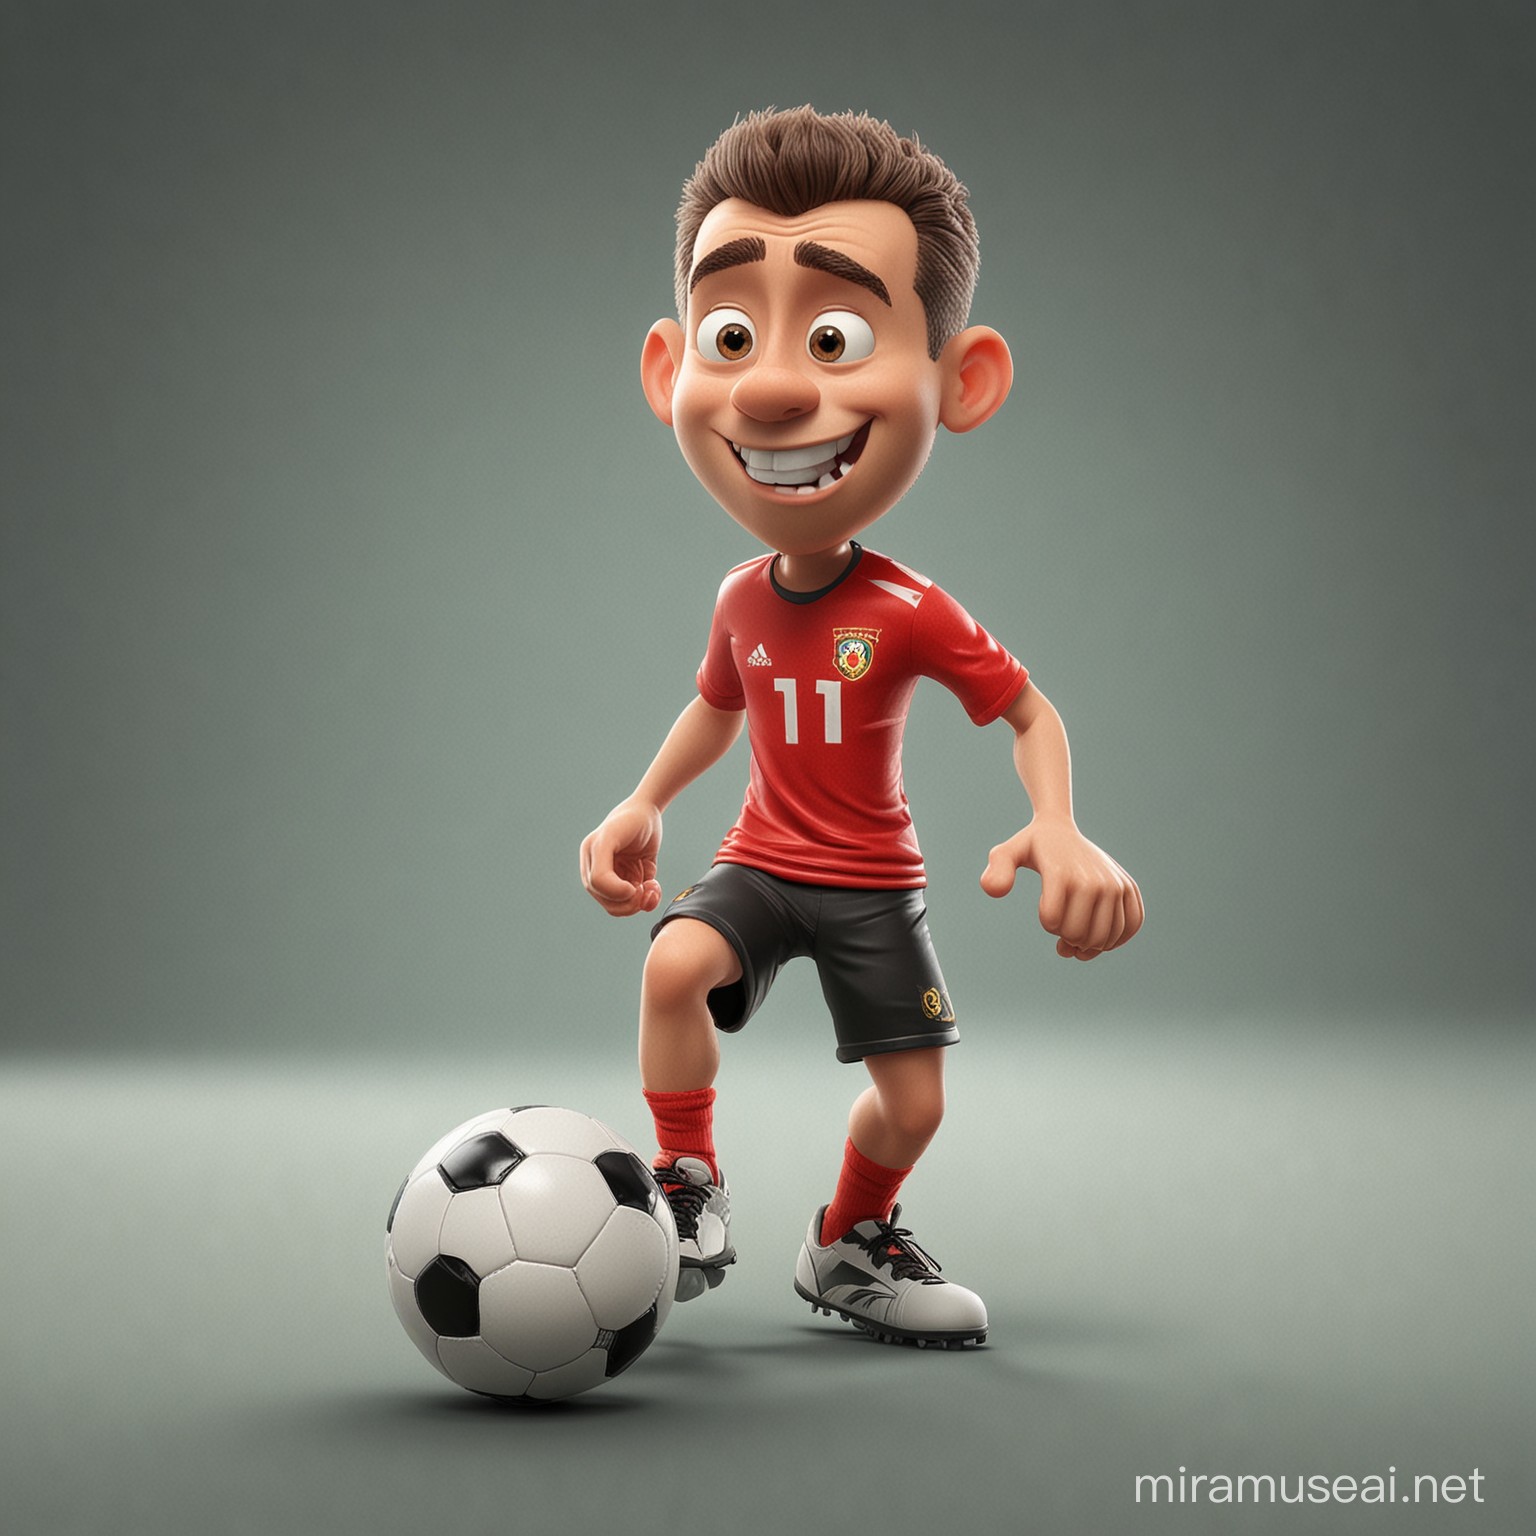 A cartoon dribbling a soccer ball